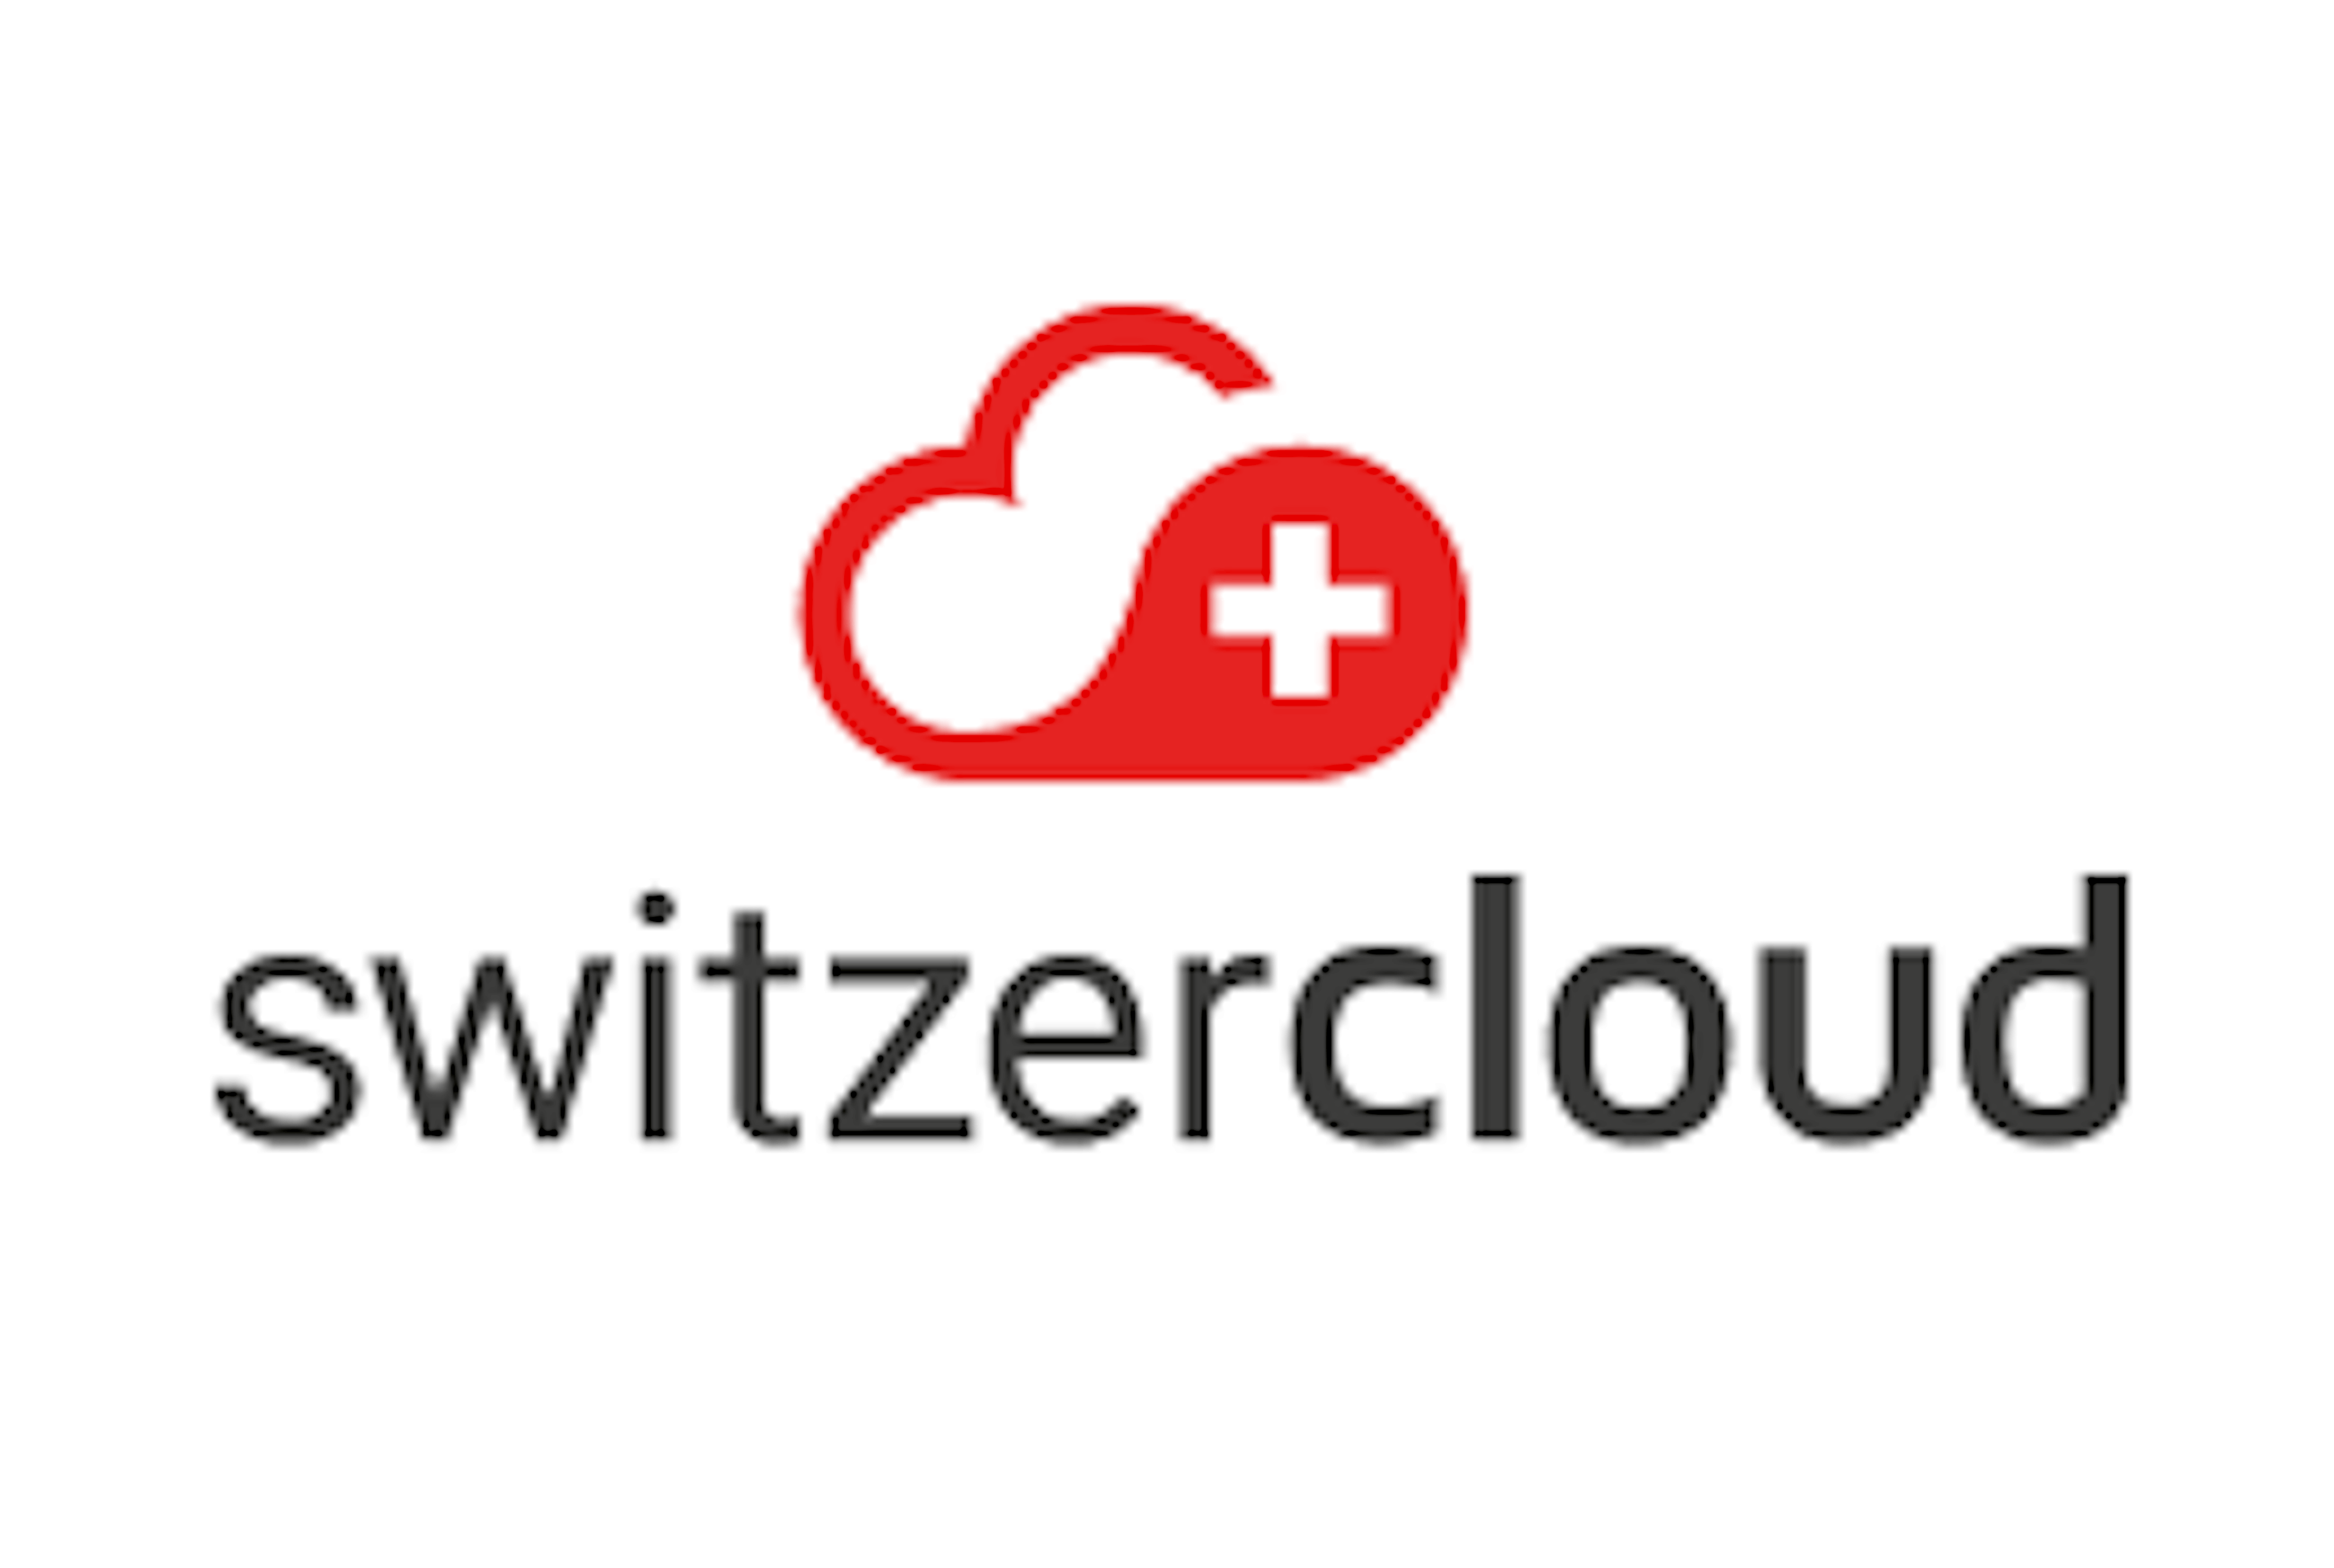 switzercloud logo